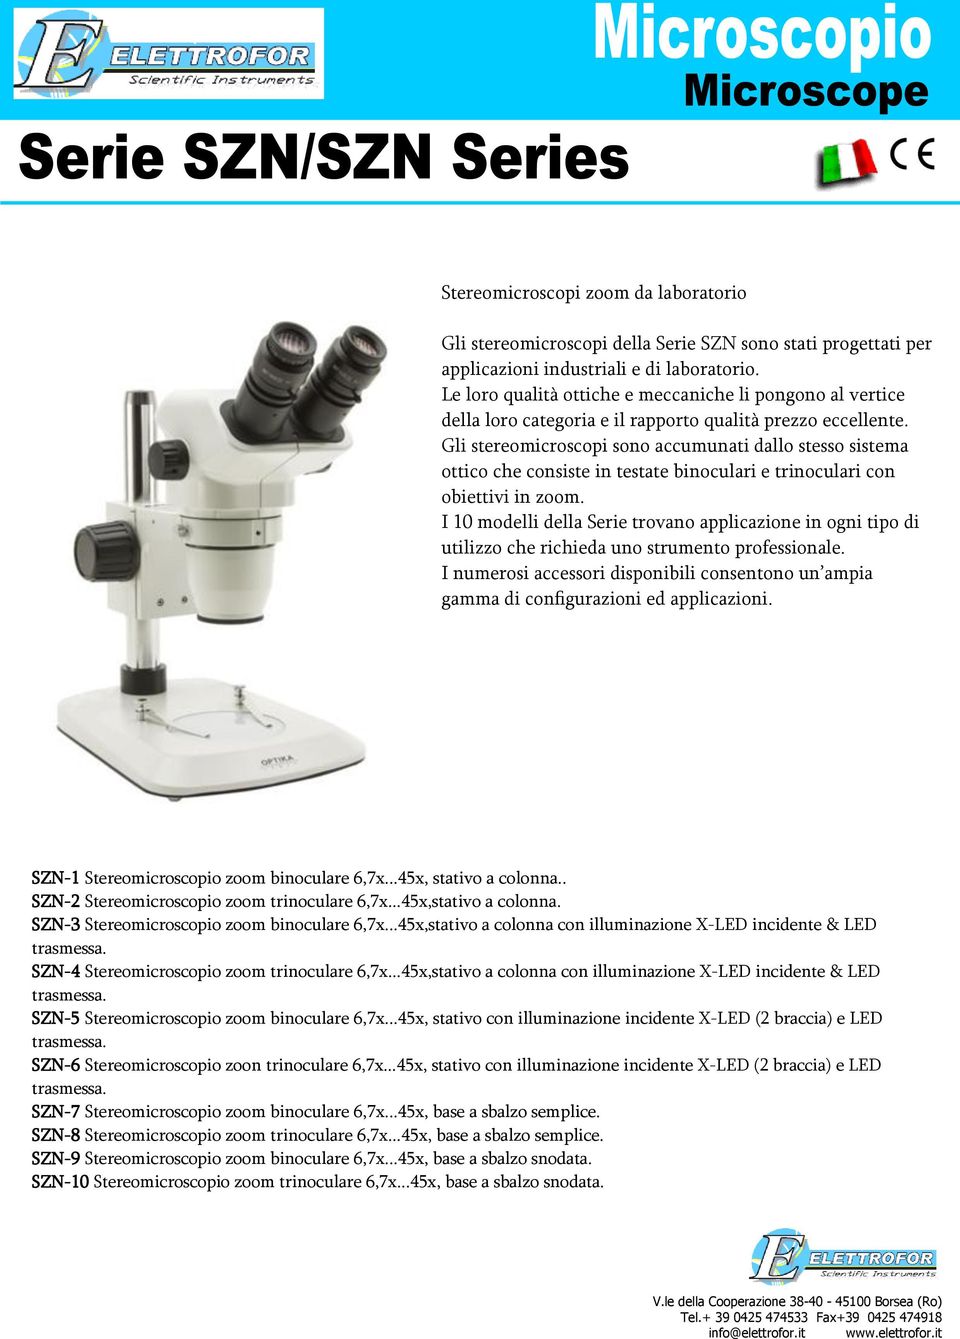 Gli stereomicroscopi sono accumunati dallo stesso sistema ottico che consiste in testate binoculari e trinoculari con obiettivi in zoom.